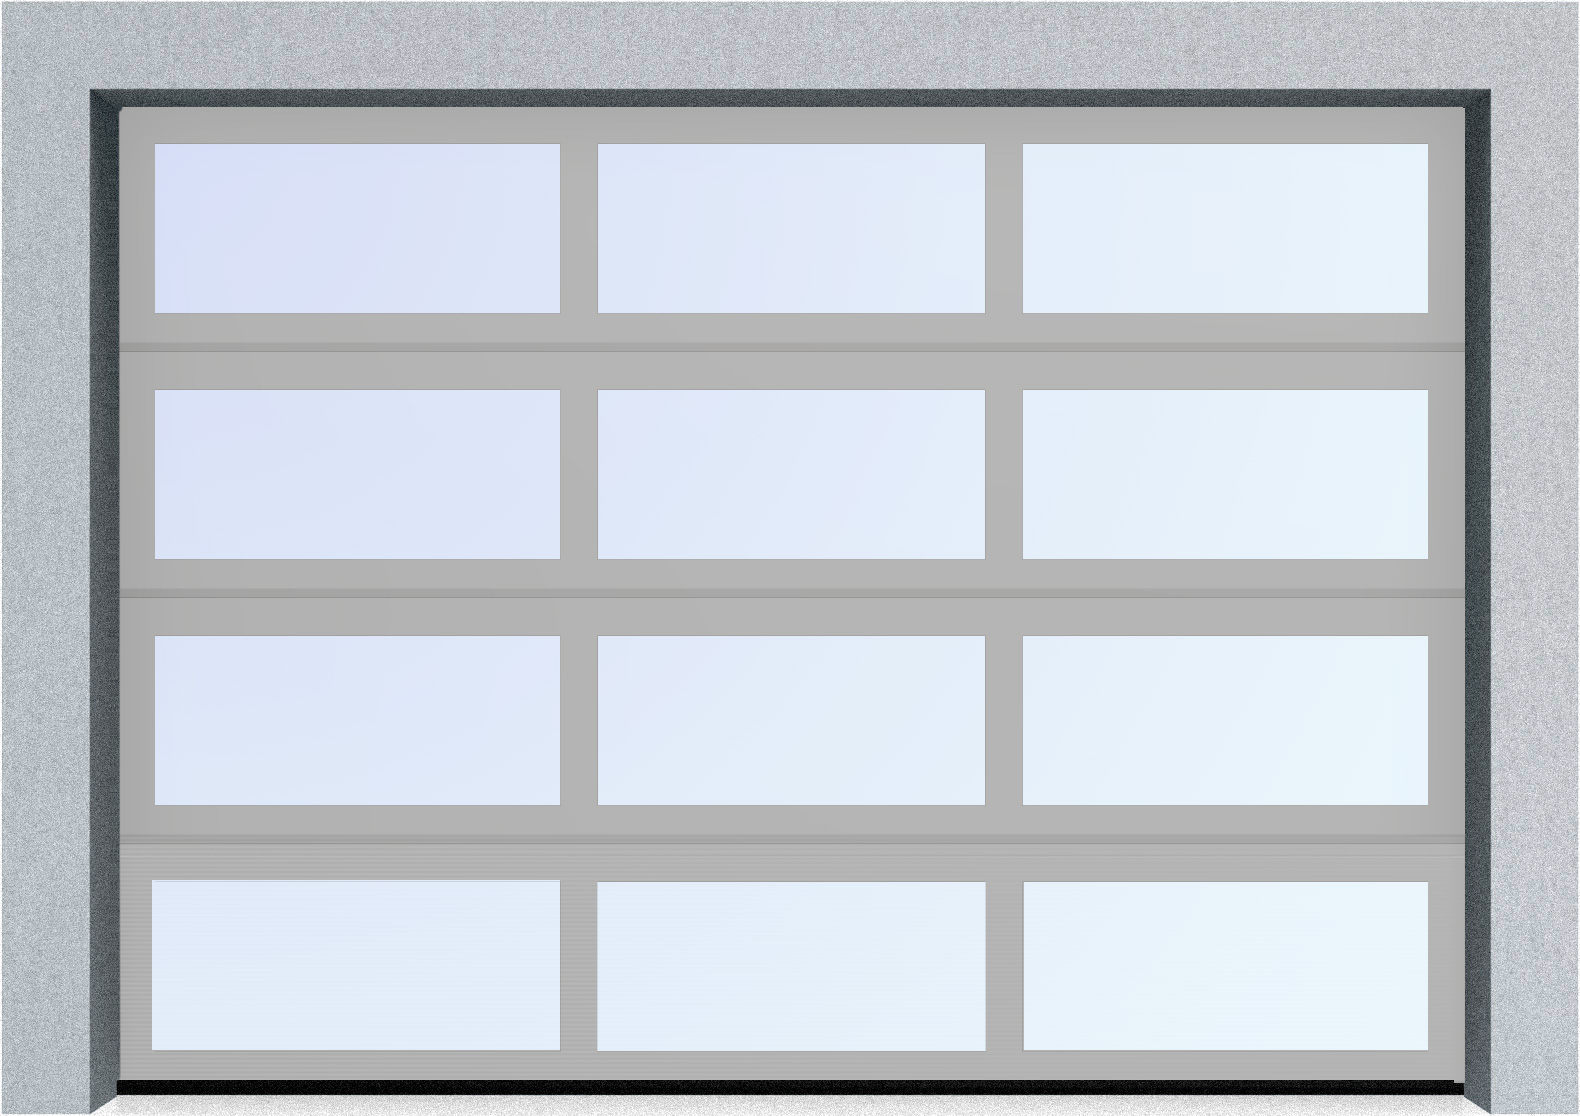  Секционные панорамные ворота серии AluTrend (АЛП) 6500х5500 нижняя панель стандартные цвета, фото 9 